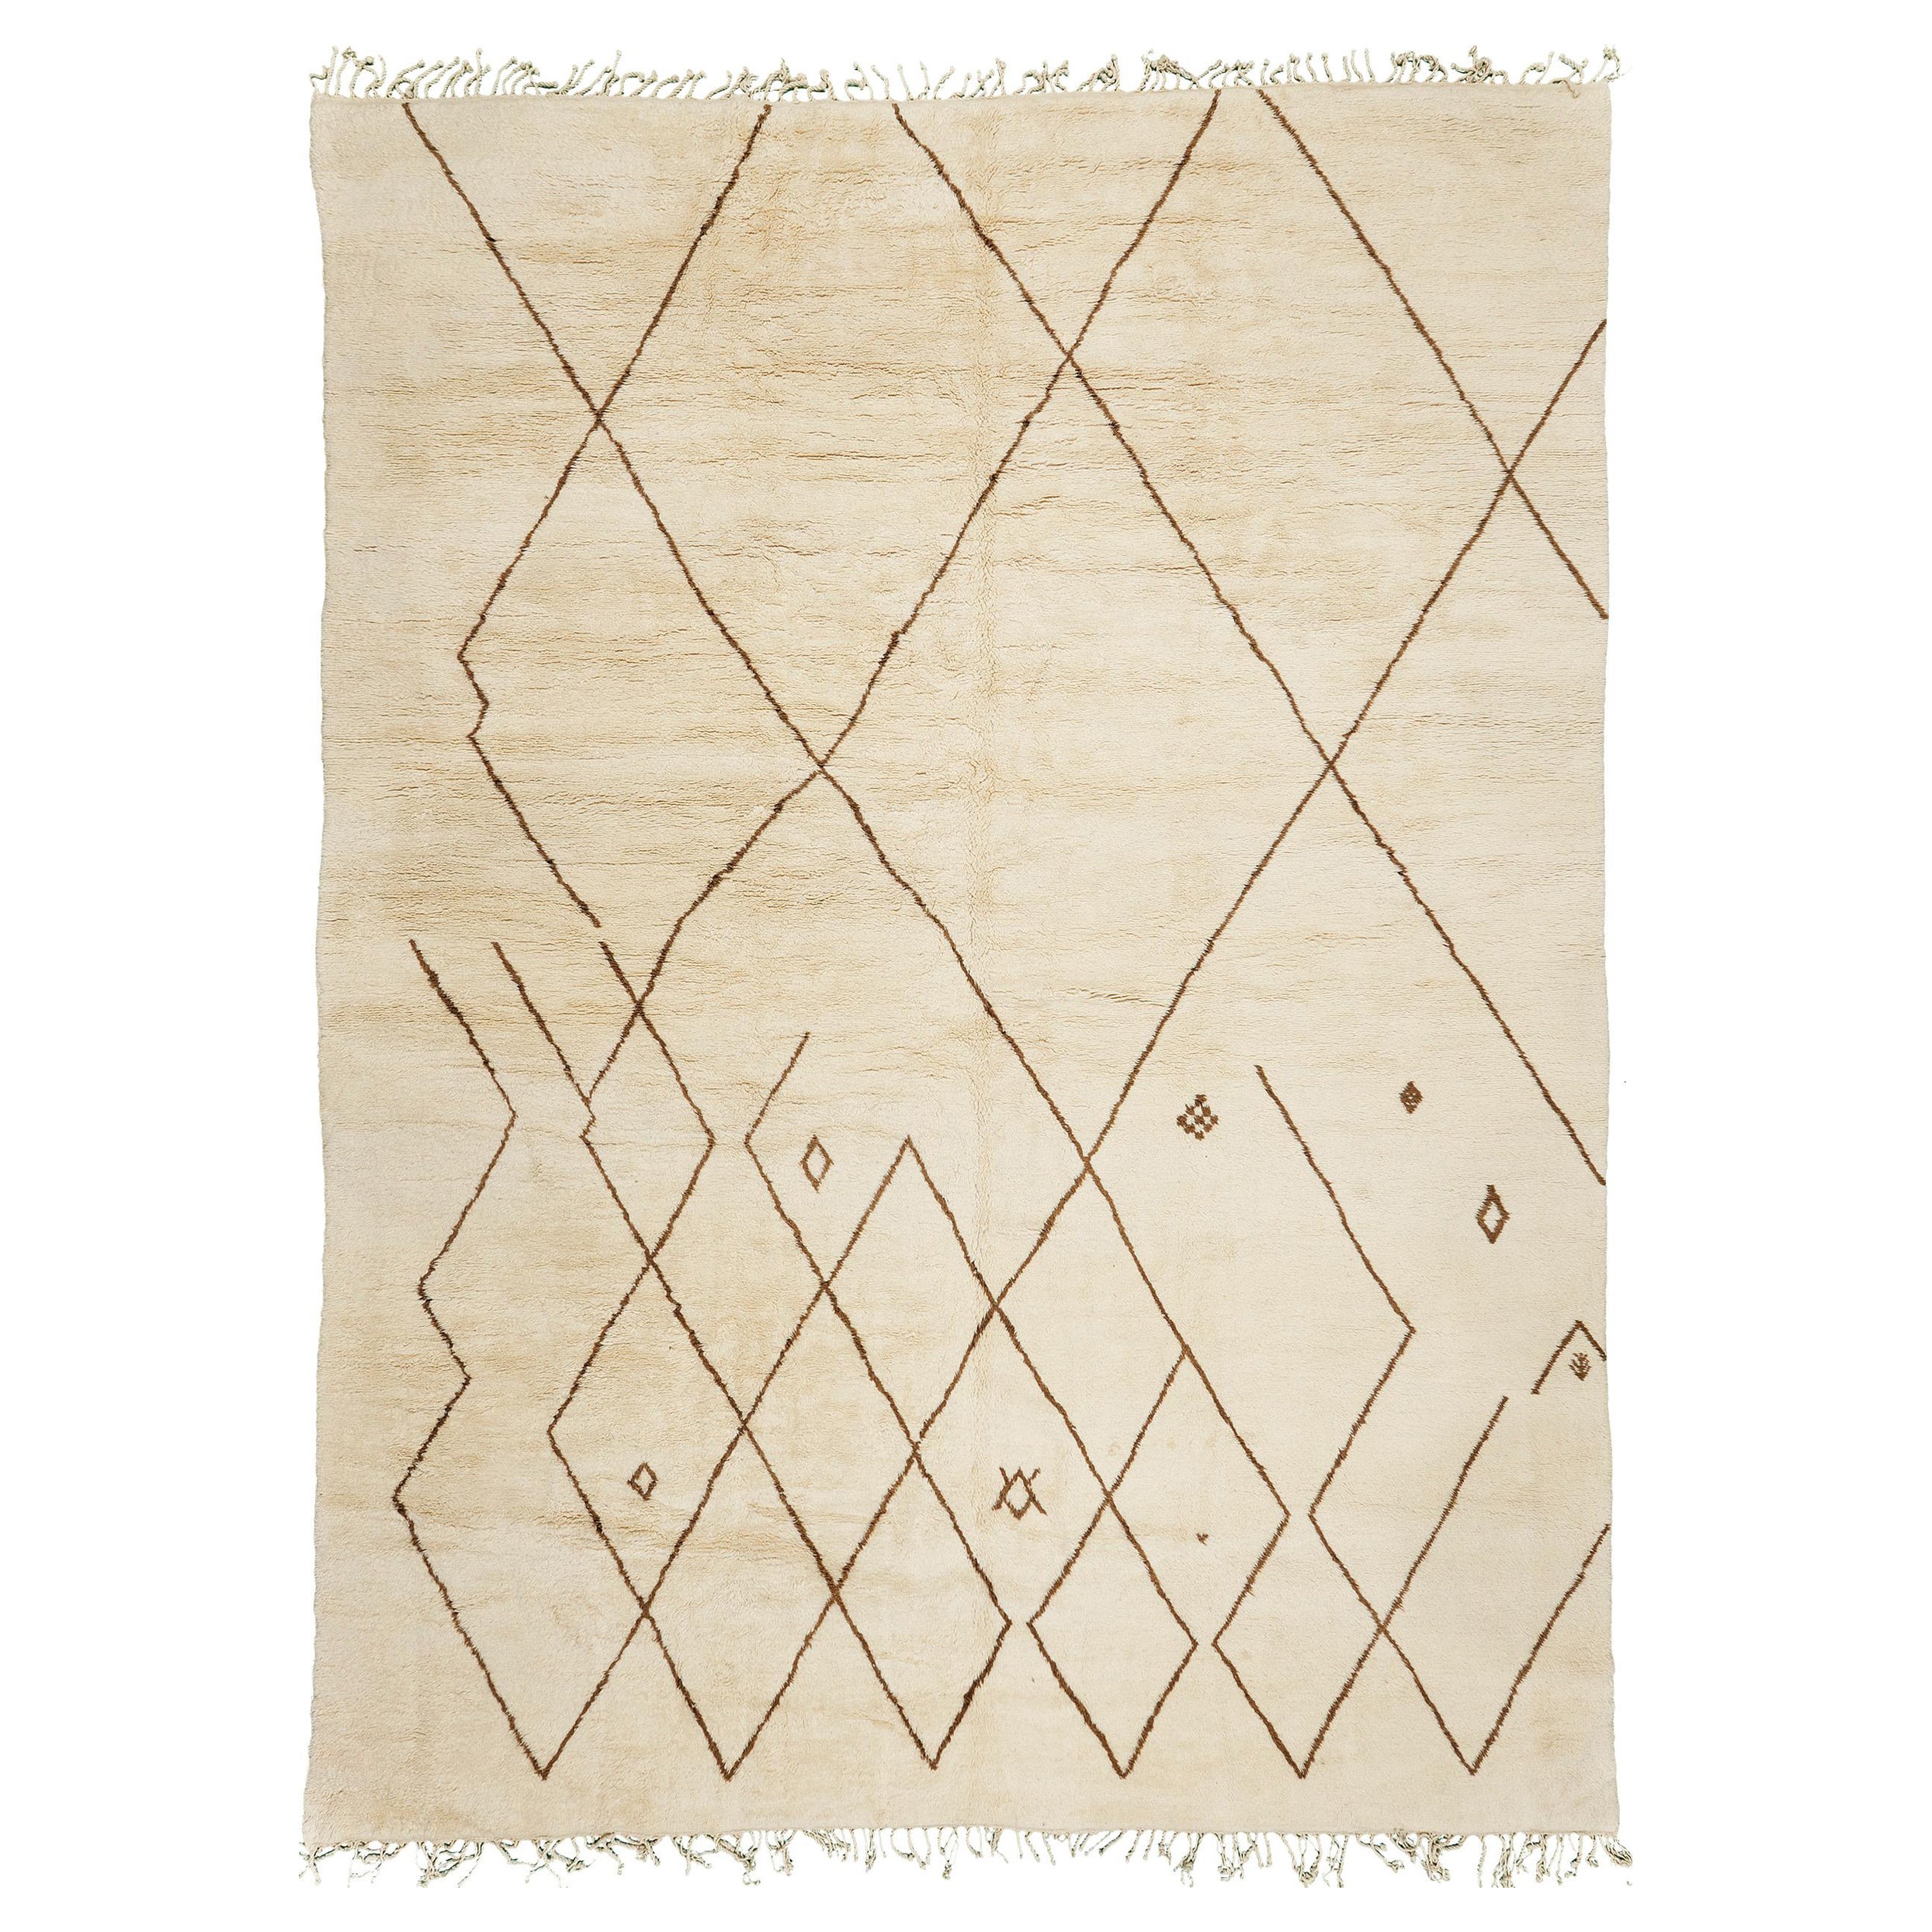 Mehraban Marokkanischer Teppich aus der Atlas-Kollektion des Atlas-Stils